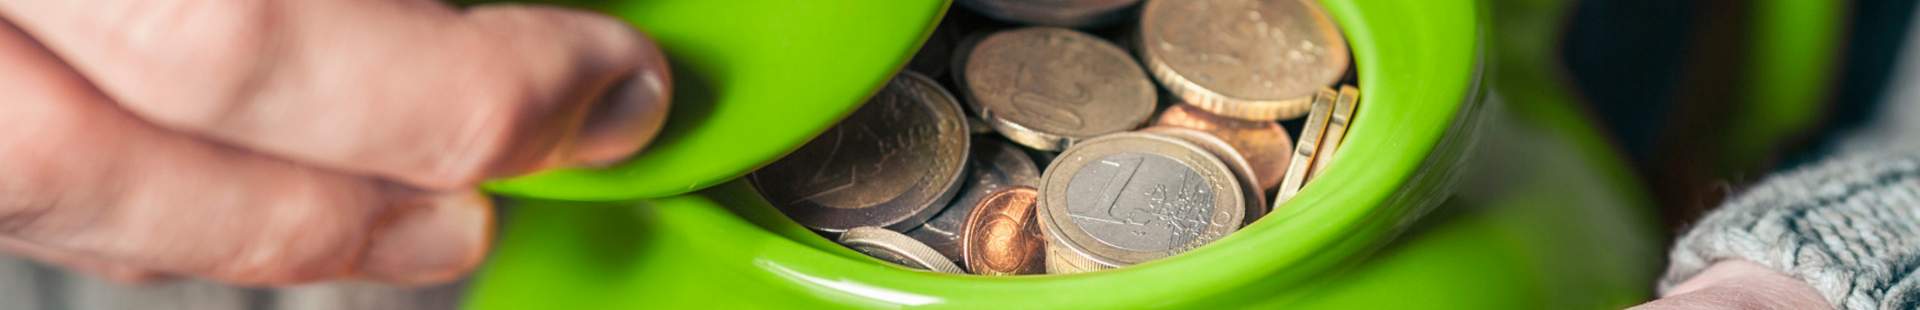 VRK Pflege-Monatsgeldversicherung – Eine grüne Teekanne mit Geld, die in zwei Händen gehalten wird.